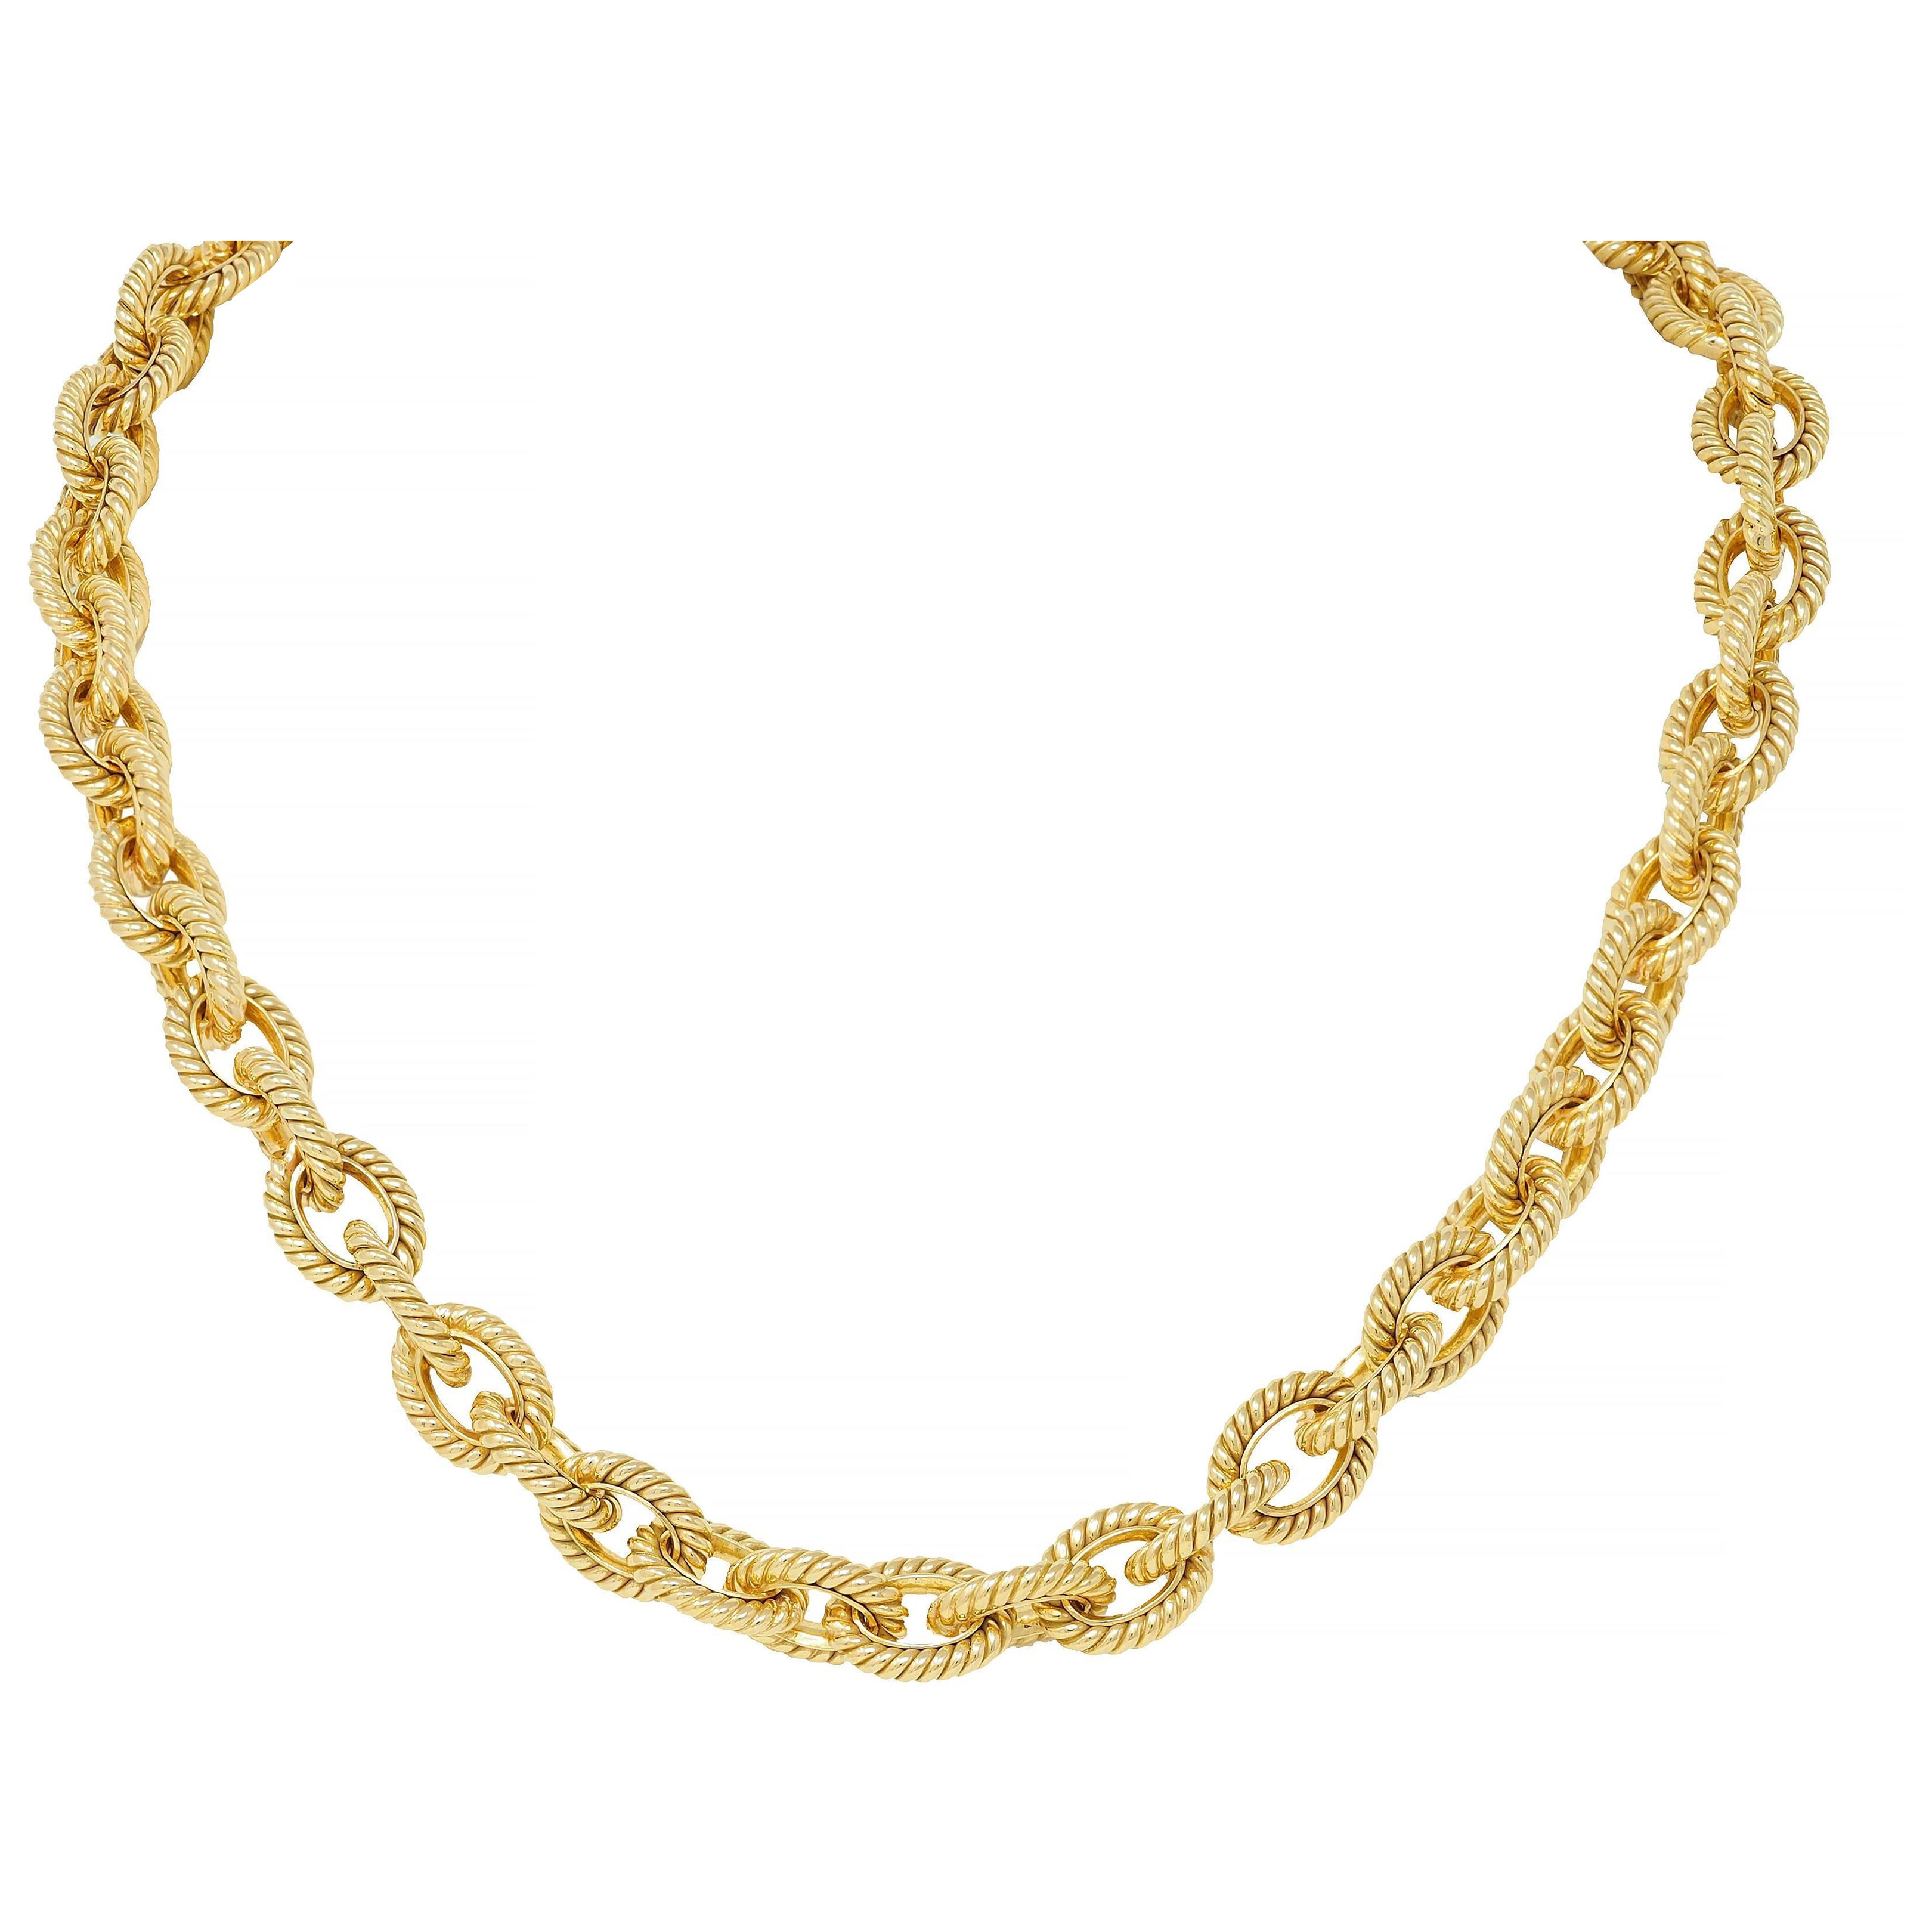 Tiffany & Co Vintage 18 Karat Yellow Gold Twisted Rope Cable Link Chain Necklace (Collier de chaîne à maillons torsadés en or jaune 18 carats)